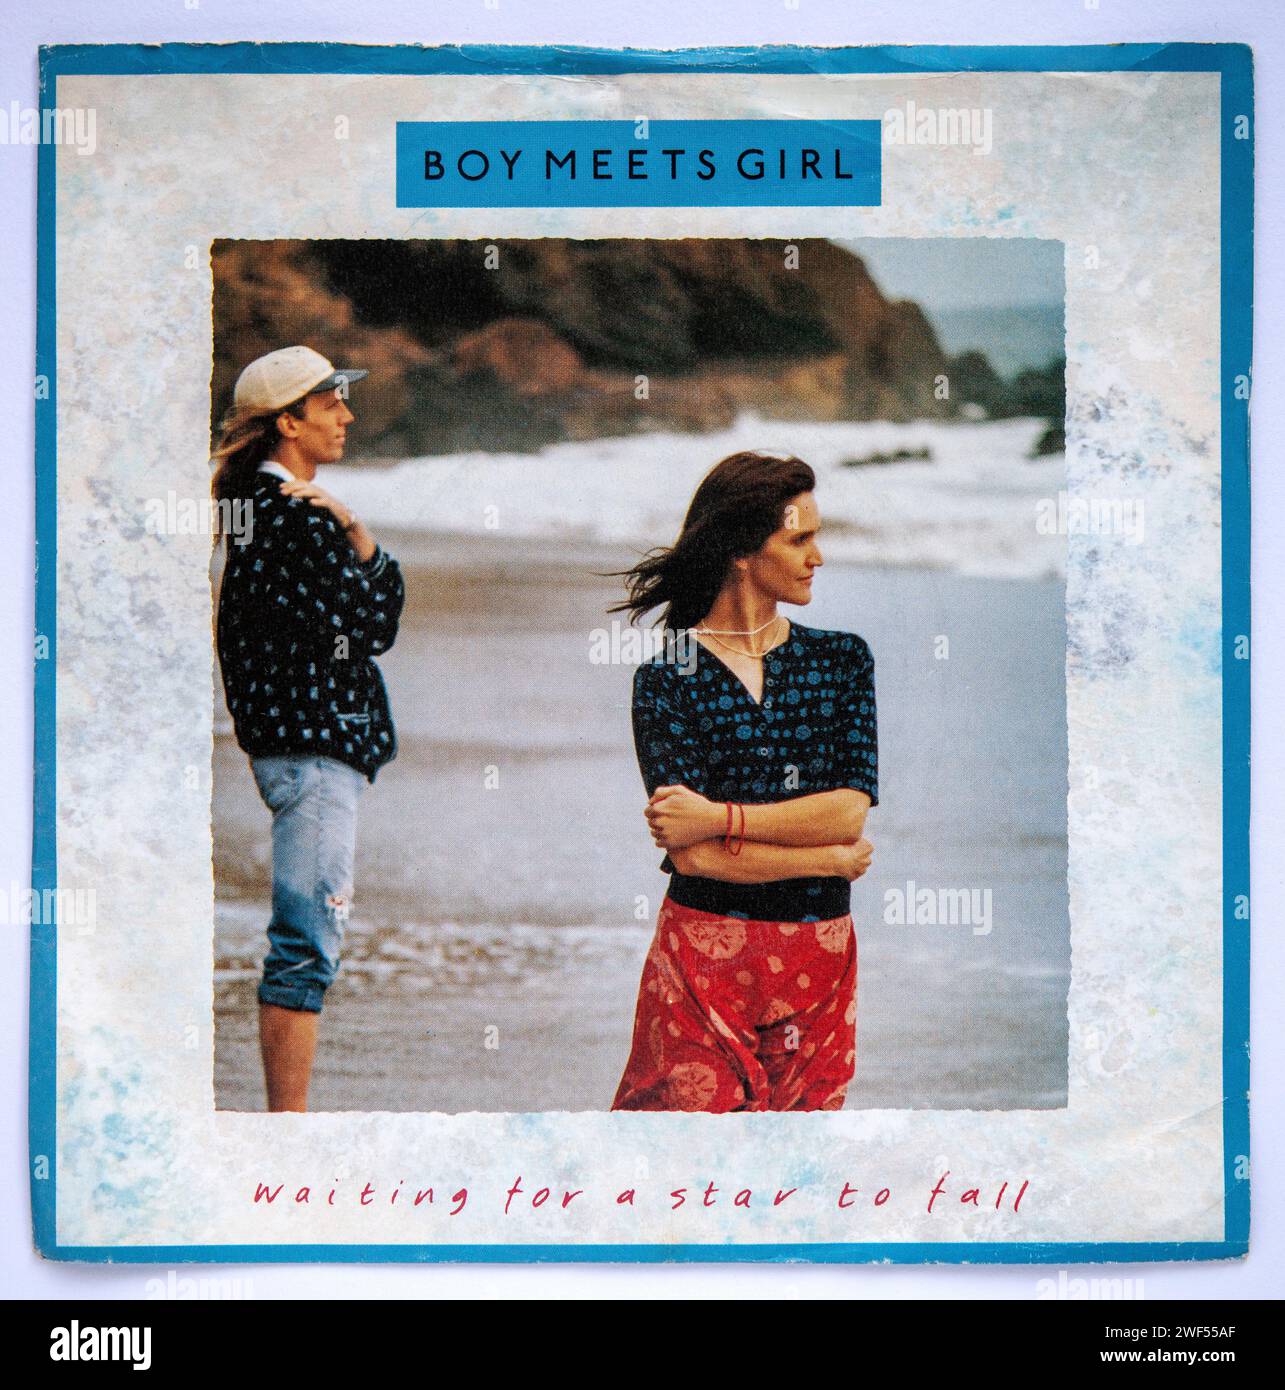 Couverture photo de la version single sept pouces de Waiting for a Star to Fall de Boy Meets Girl, qui est sorti en 1988 Banque D'Images